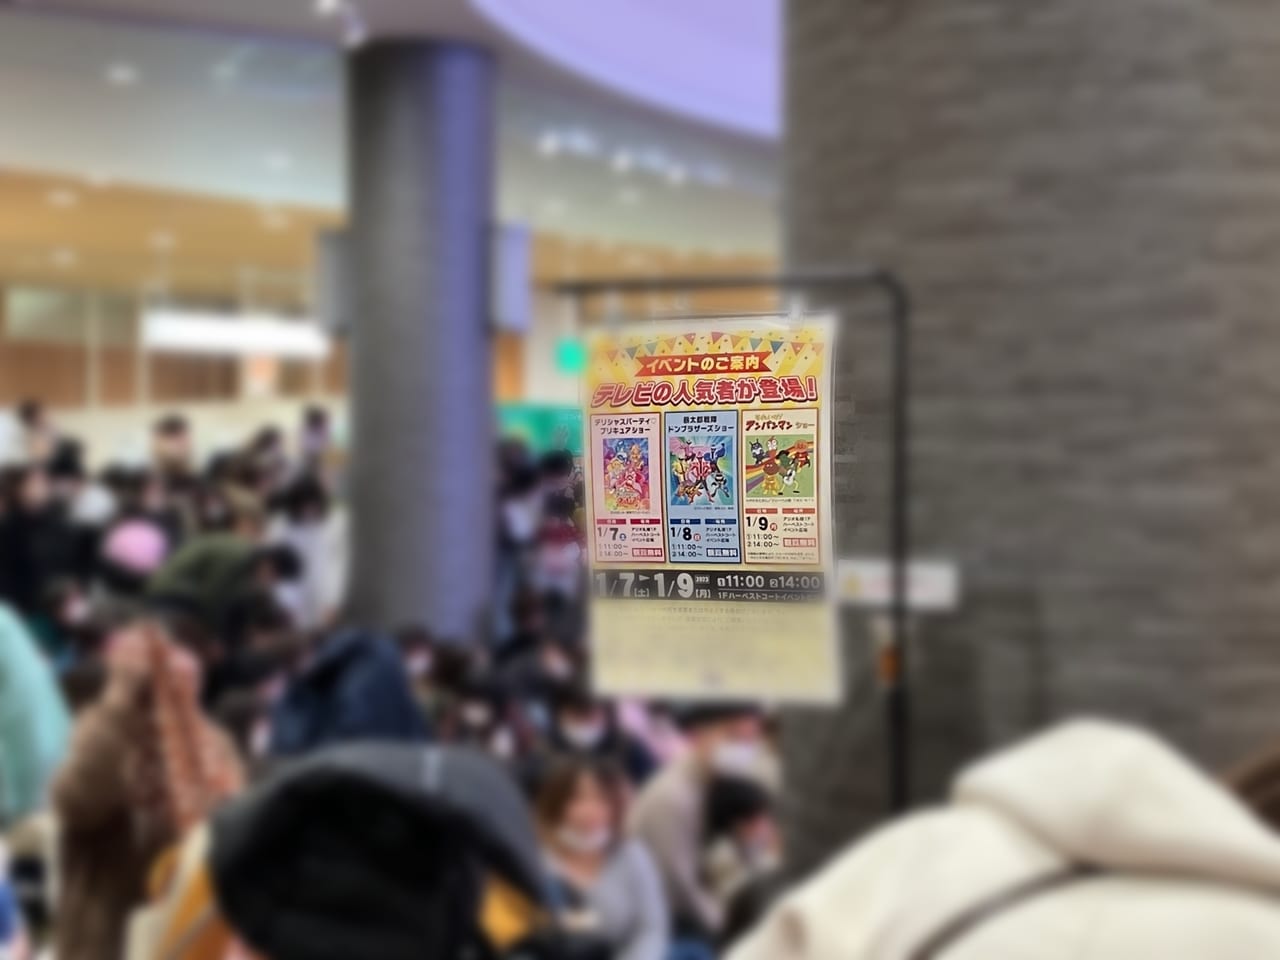 ちびっ子集まれ！ 「アリオ札幌」で仮面ライダーギーツとアンパンマンに会えるよ。なんと観覧は無料です。